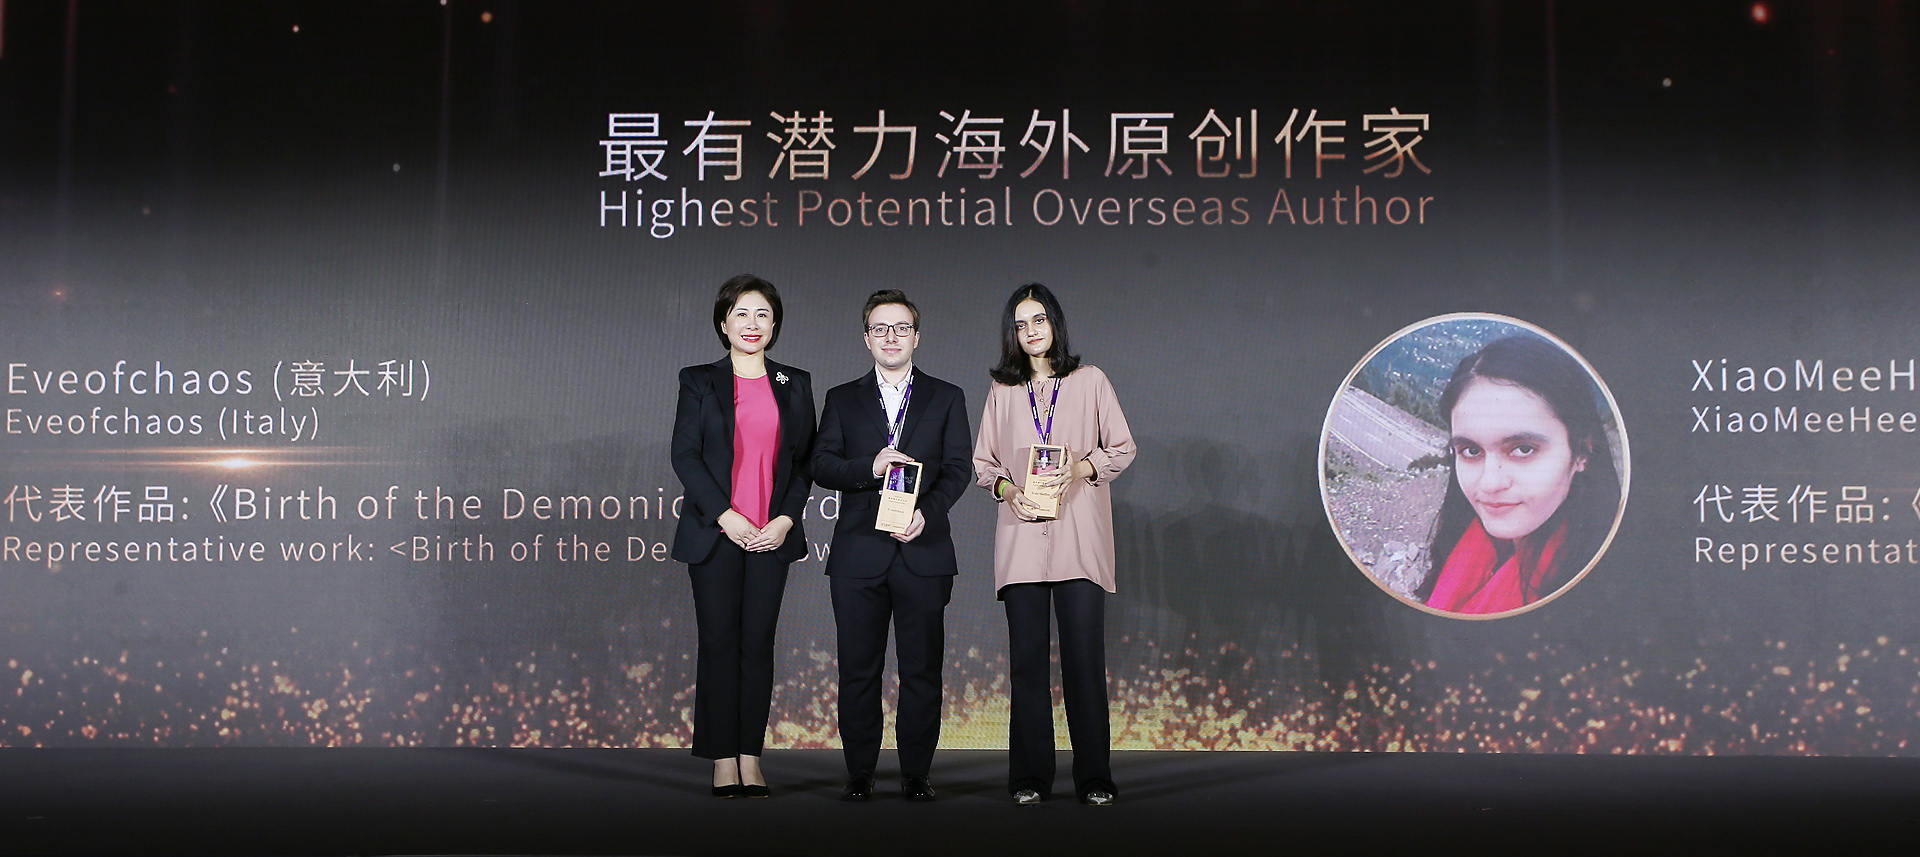 聚焦网络文学产业化与国际化 首届上海国际网络文学周开幕